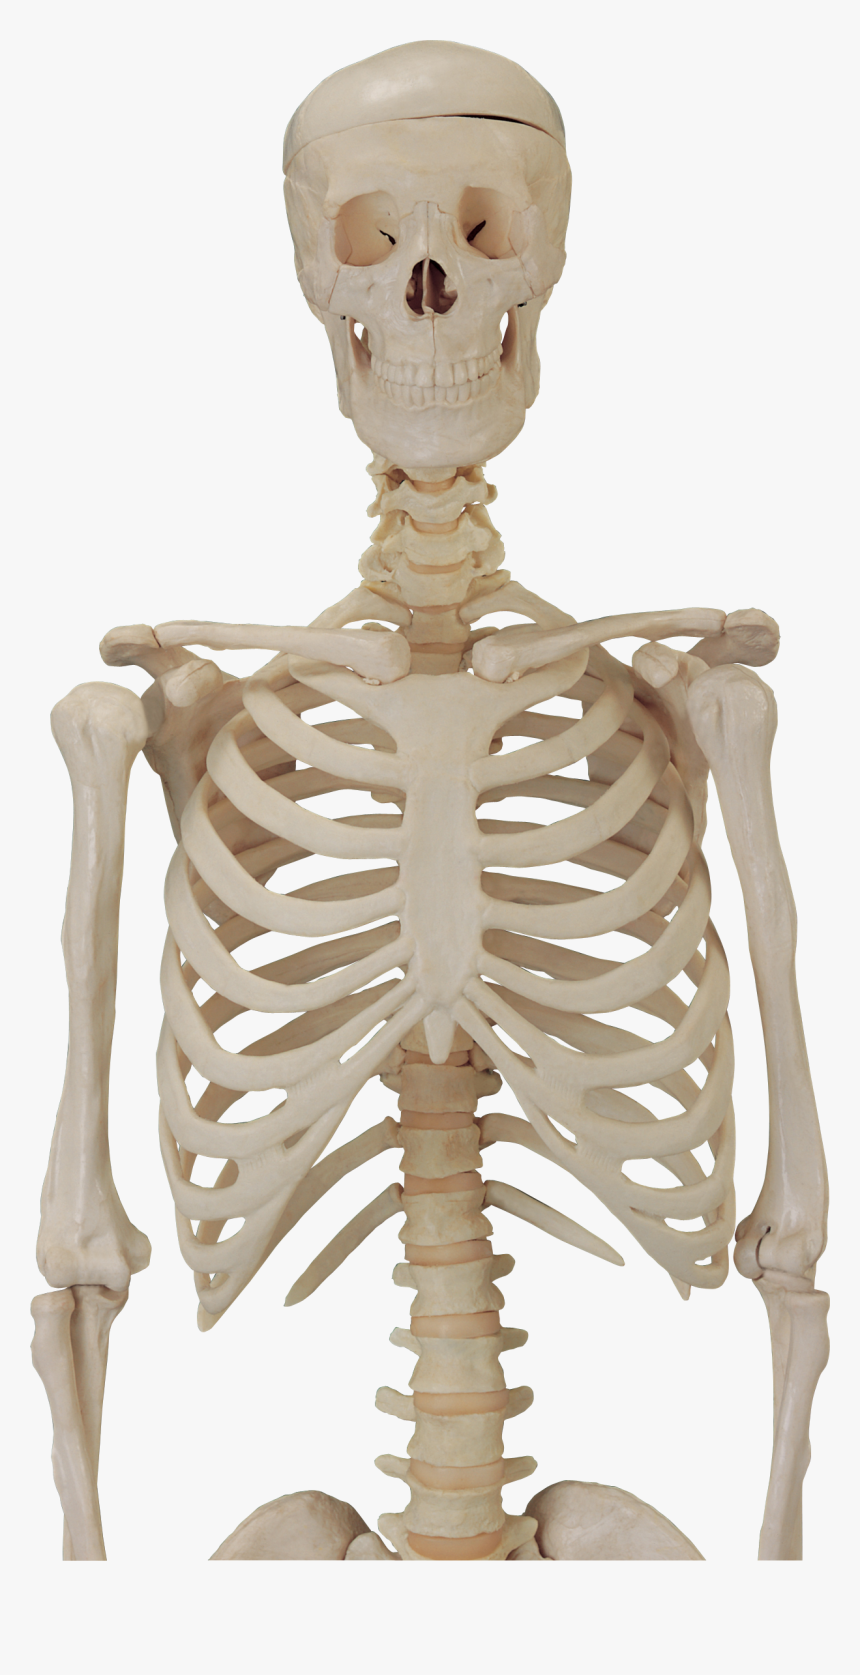 Skeleton Hd Png Transparent Skeleton Hd Images - Skeleton Body Png, Png Download, Free Download